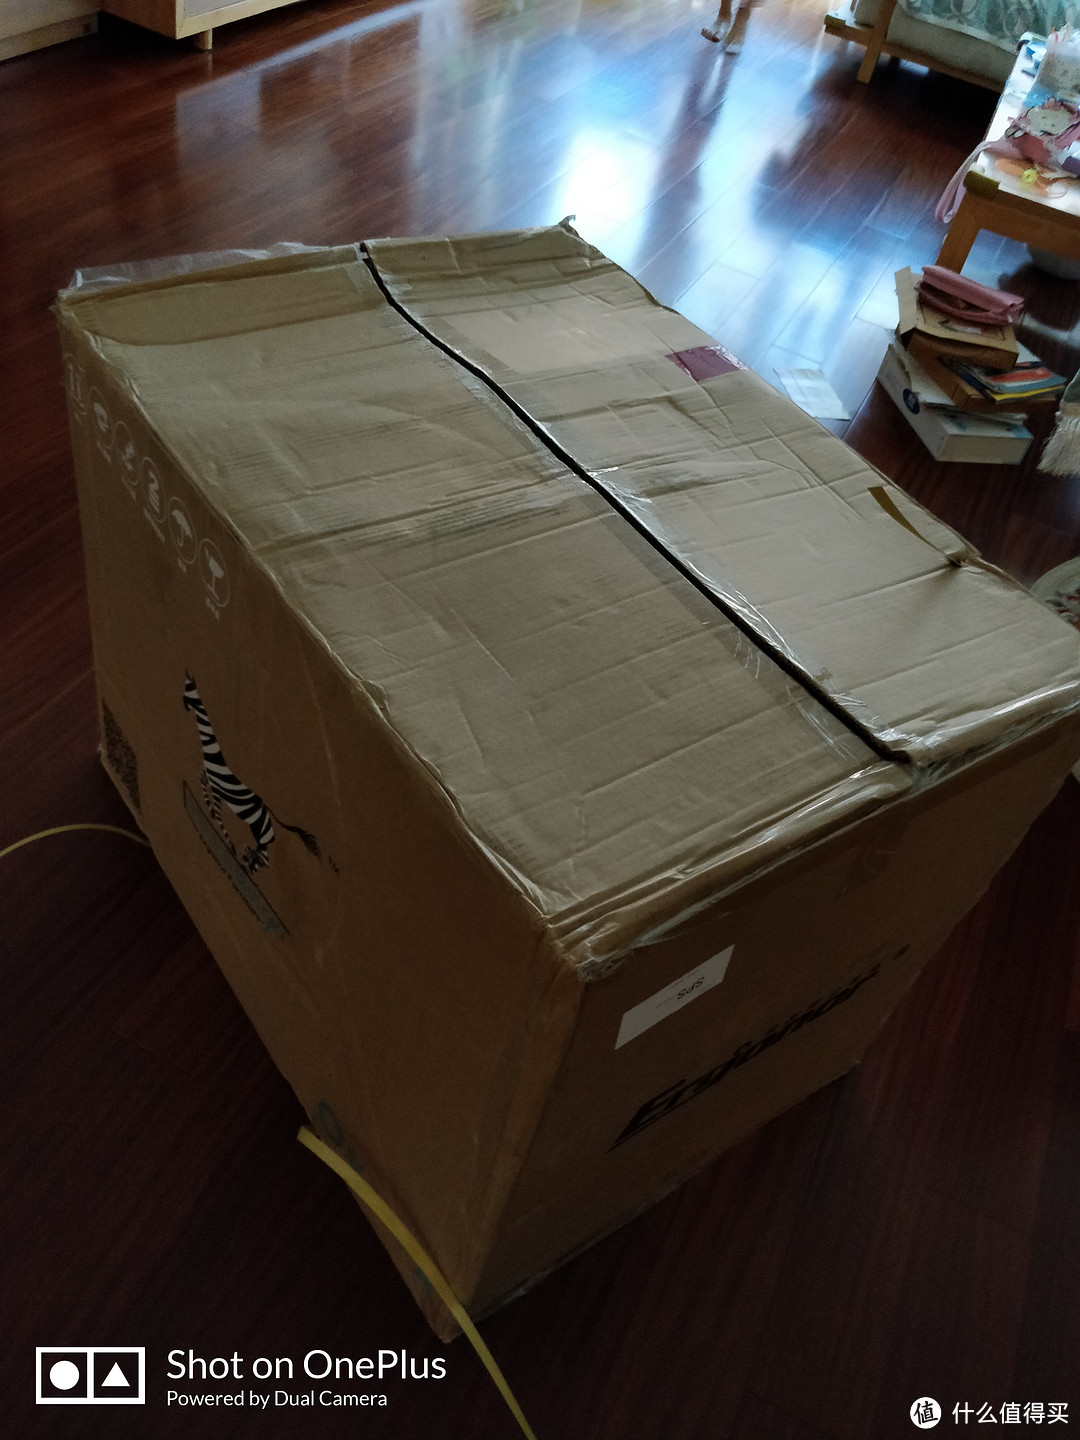 大箱子800×600×650mm，非常重。